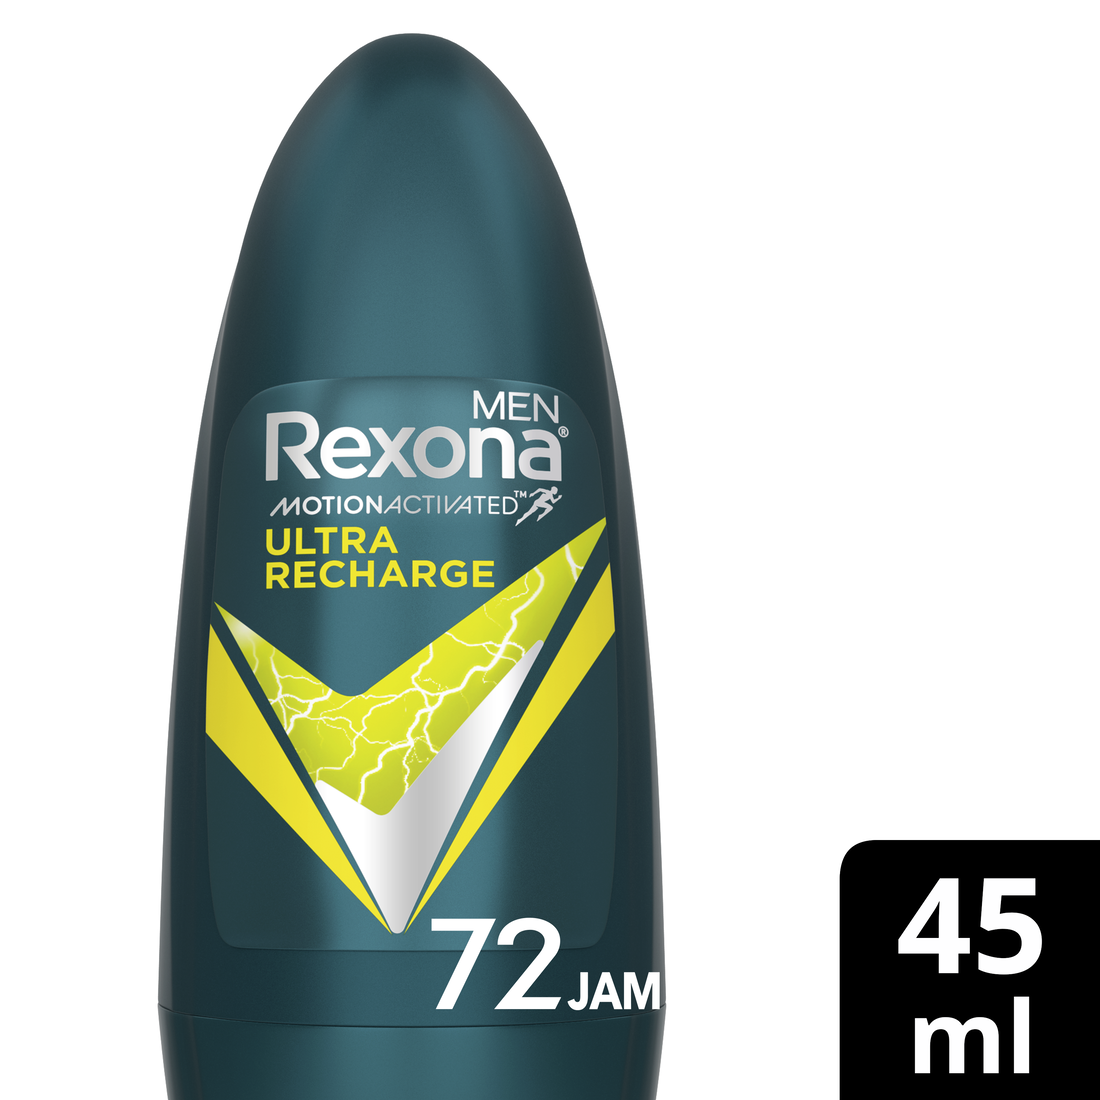 Jual Rexona Men Ultimate Recharge Roll-On Deodorant 45 mL di Seller ...